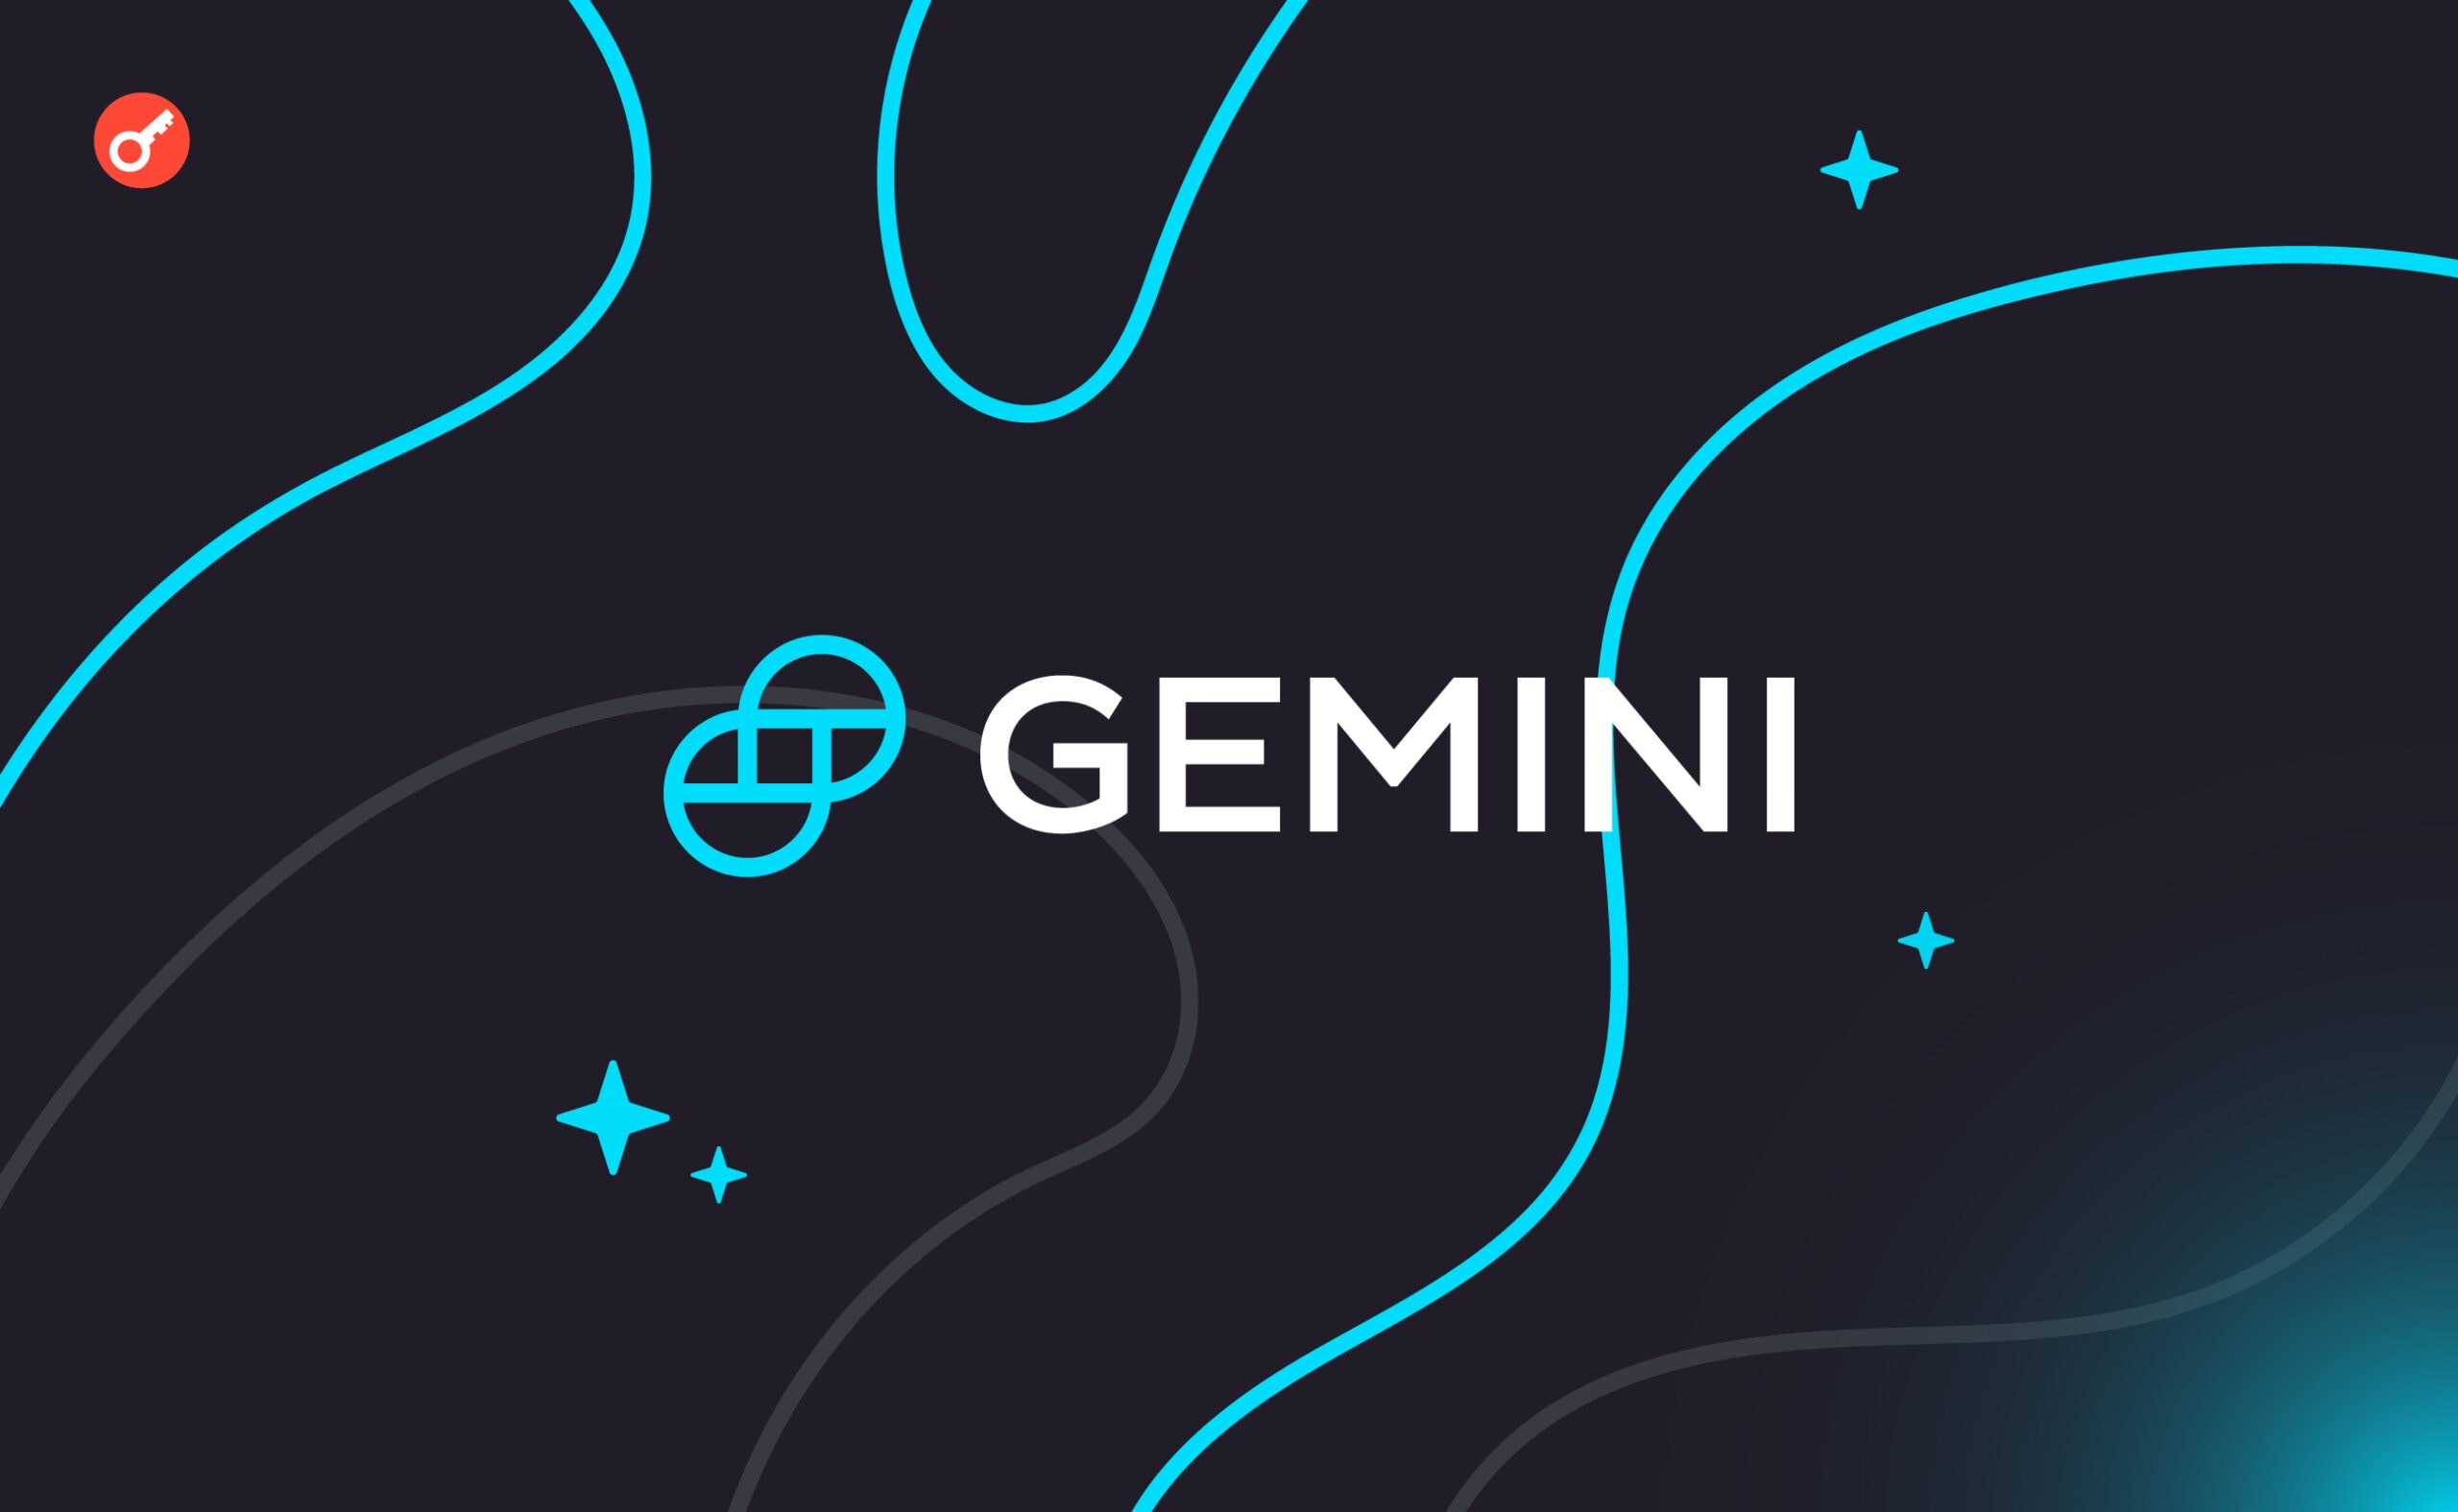 Gemini отримала ліцензію постачальника послуг віртуальних активів у Франції. Головний колаж новини.